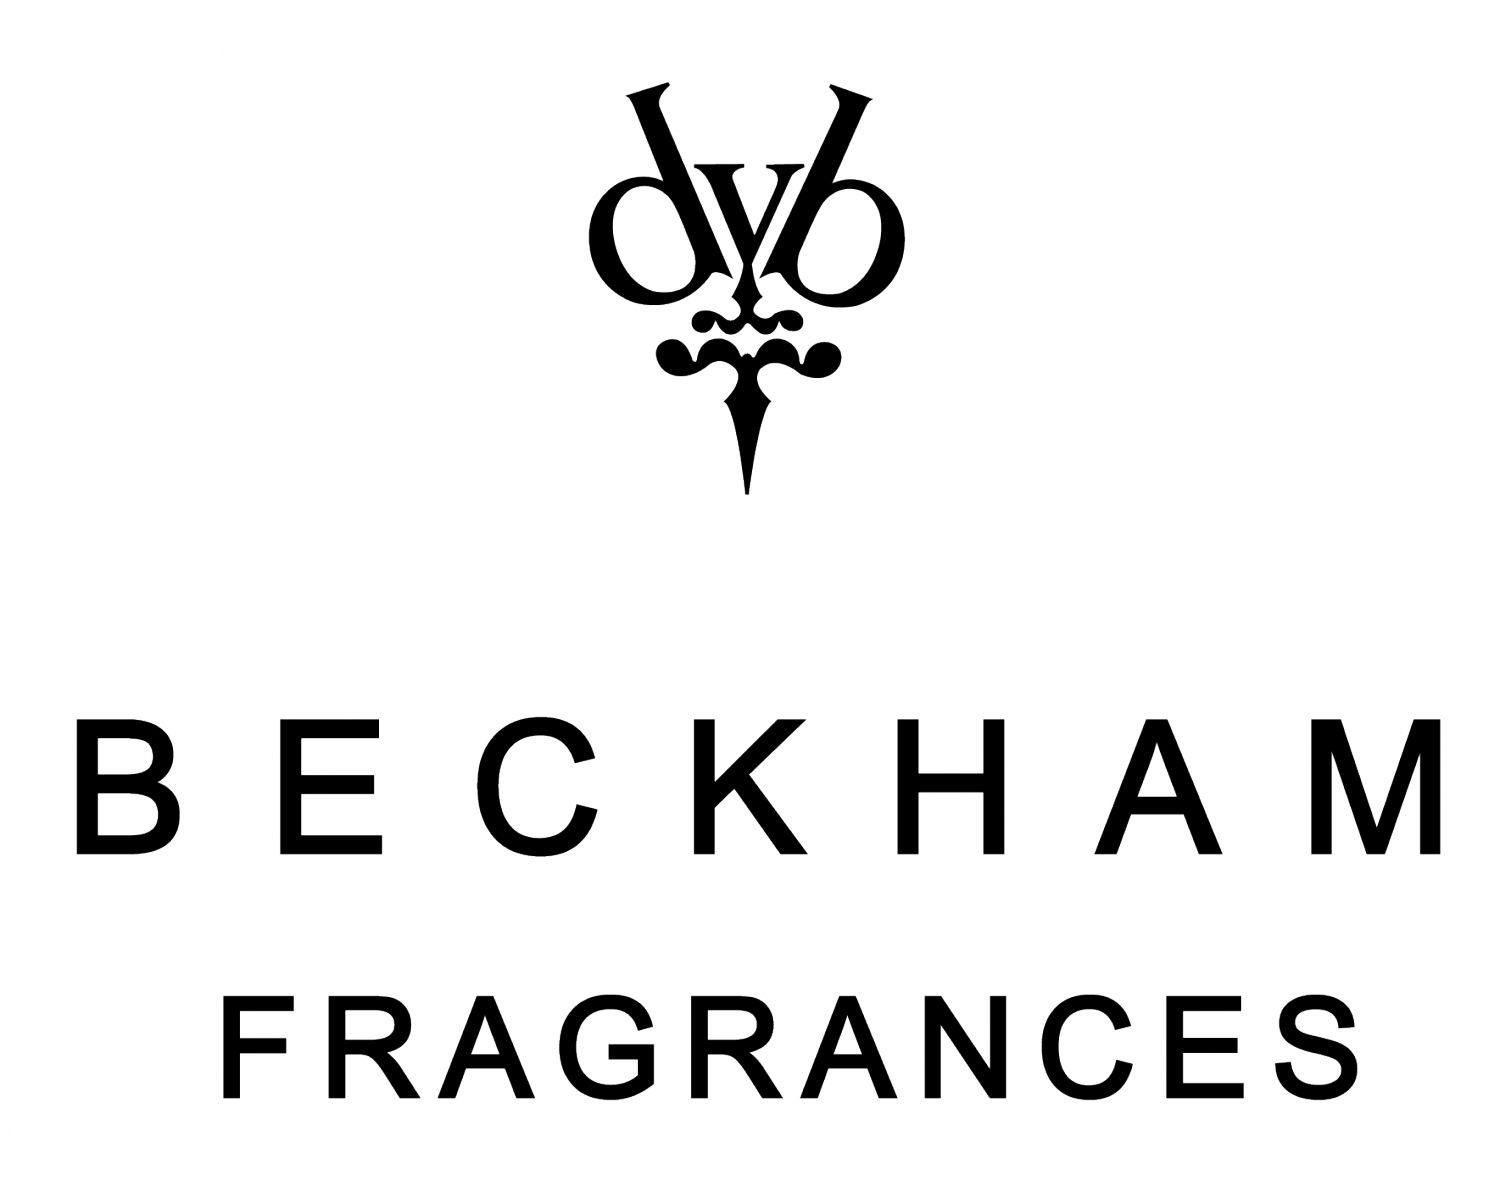 David Beckham logo